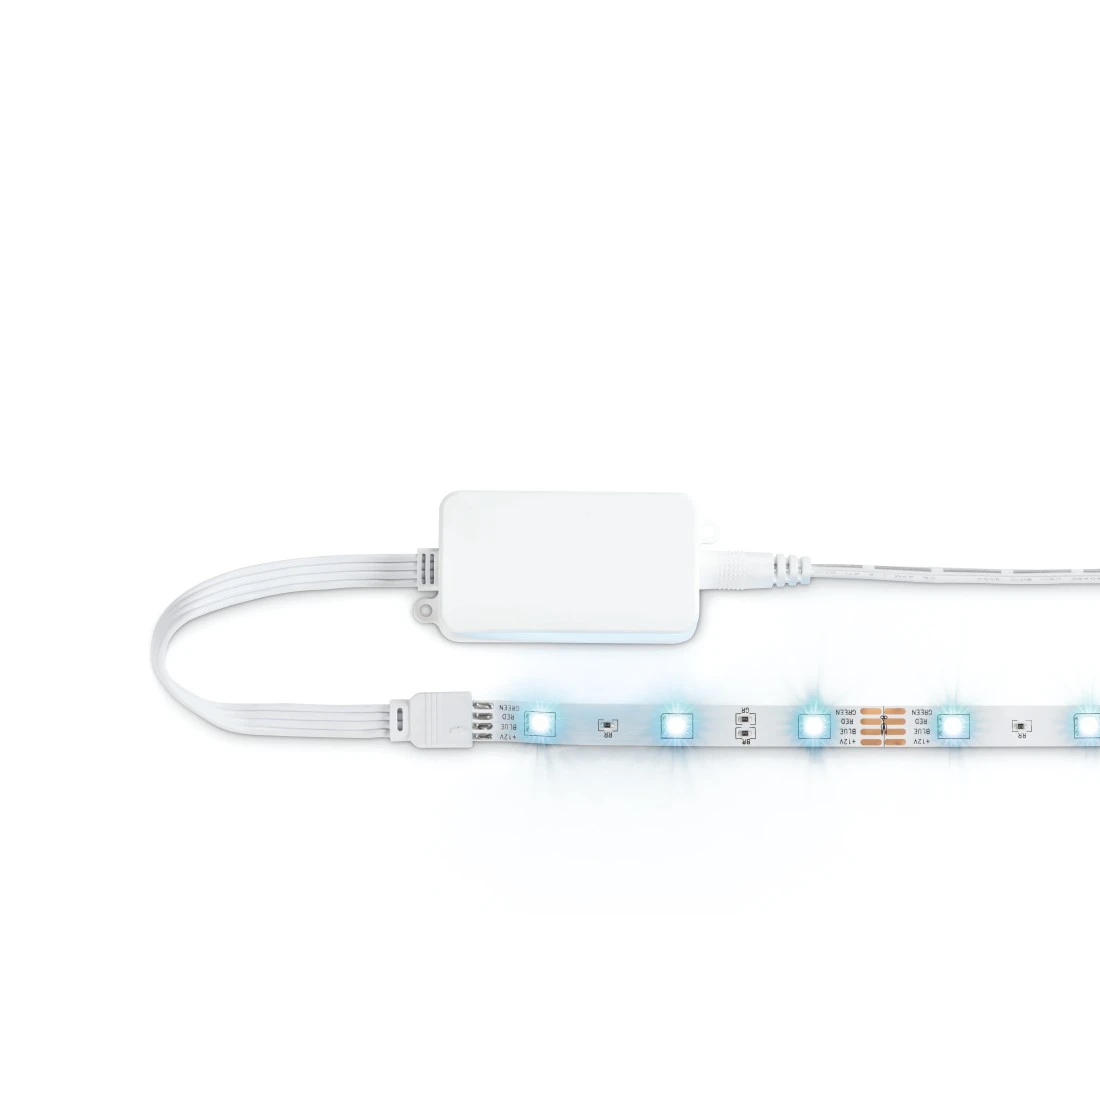 2m LED Strip mit App-Steuerung und USB-Anschluss für nur 6,99 Euro